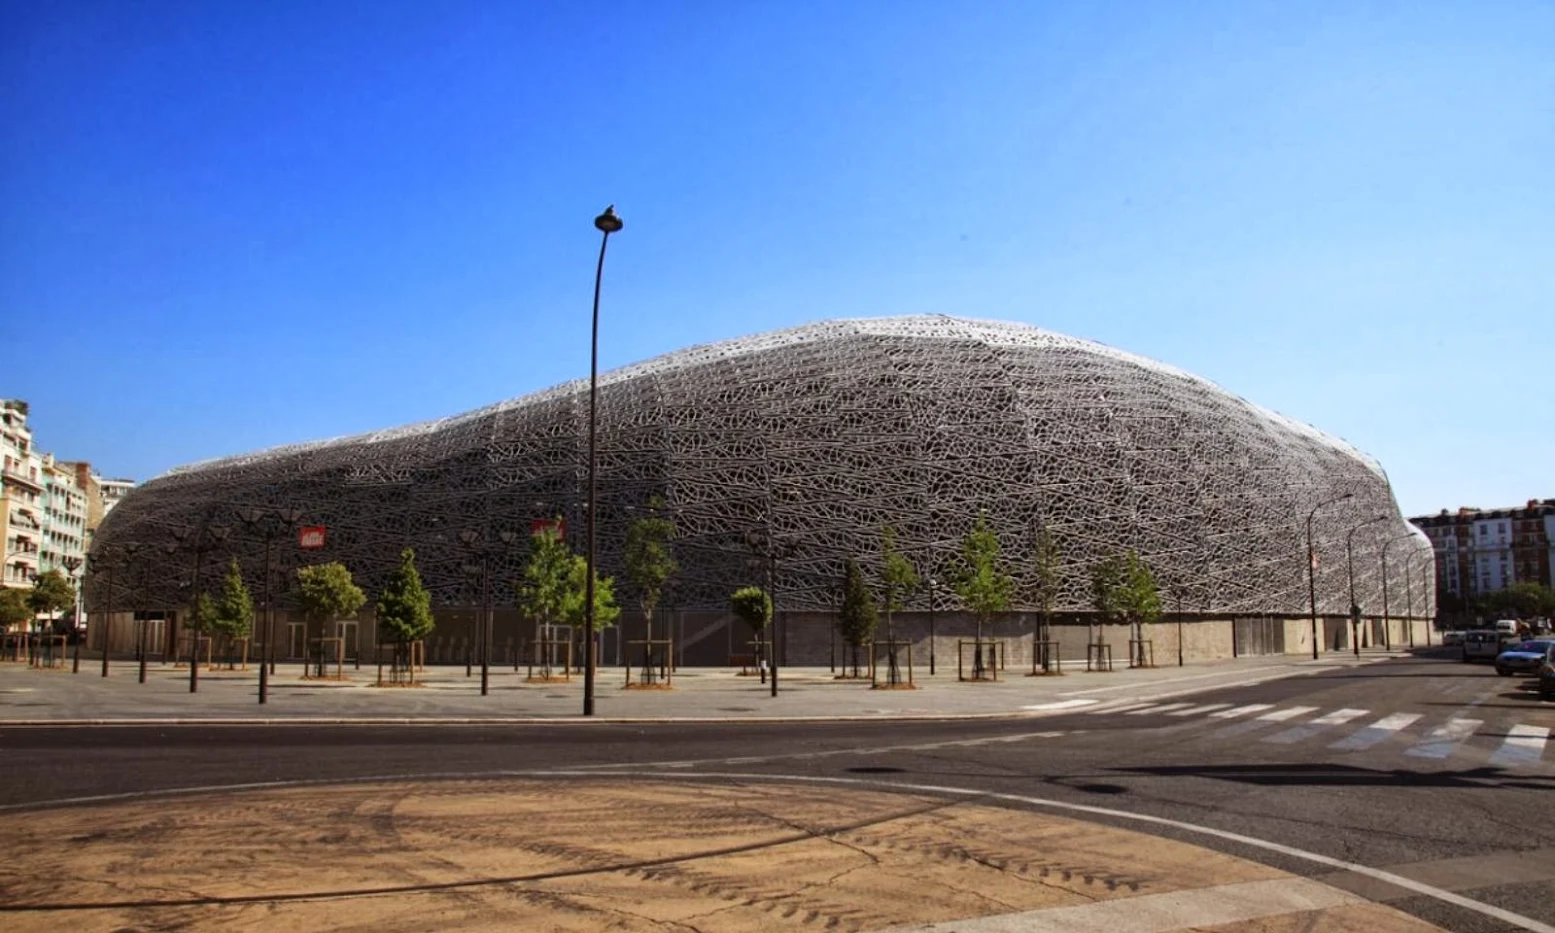 Stade Jean Bouin by Rudy Ricciotti